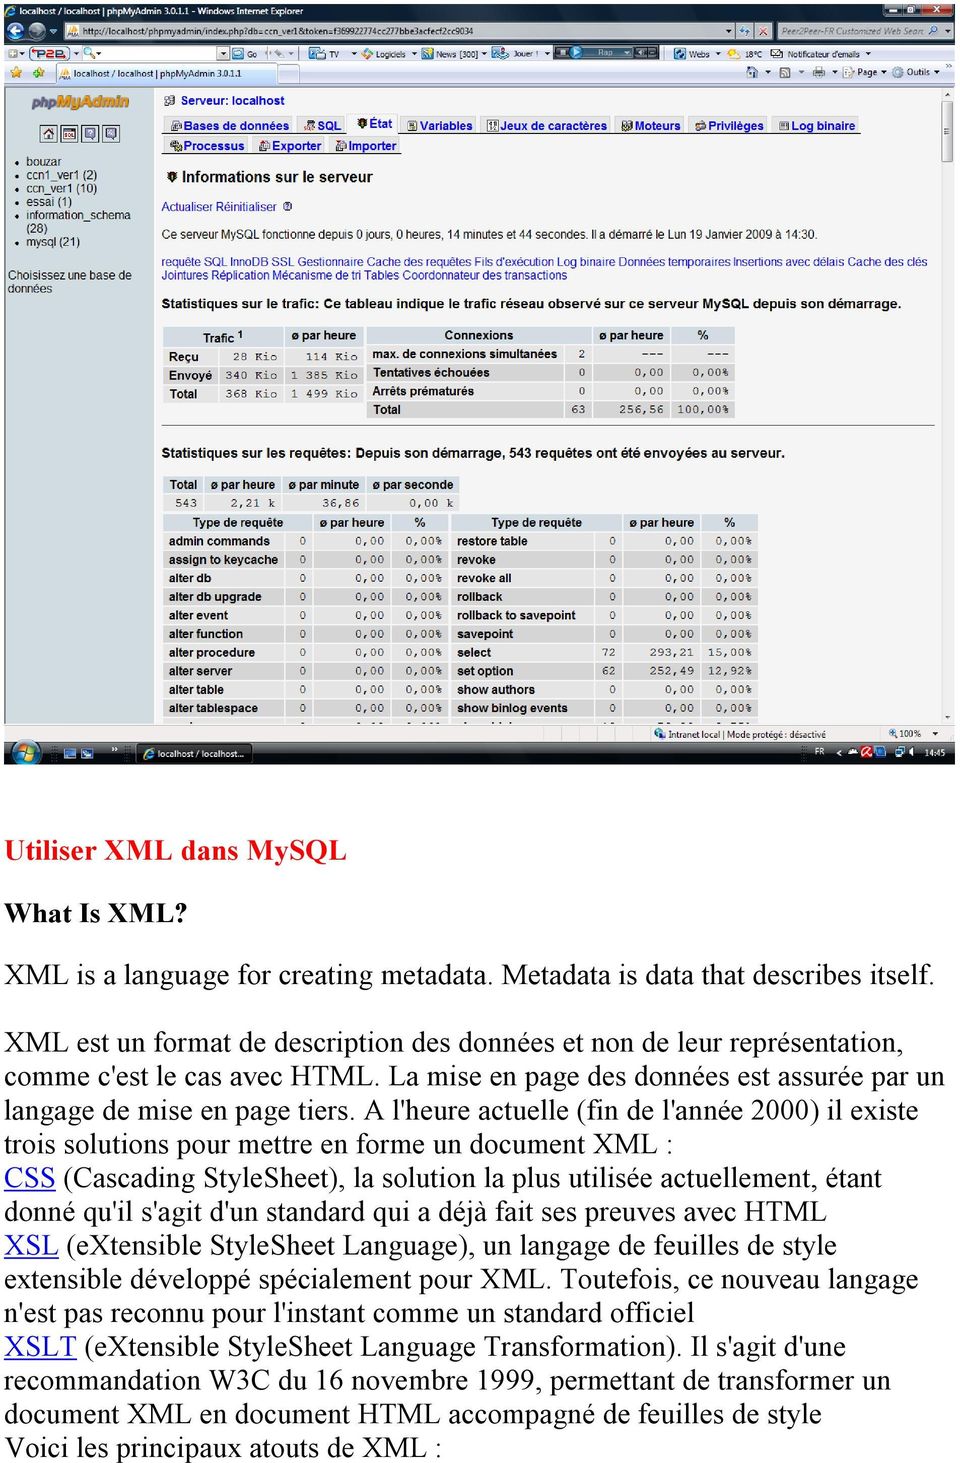 A l'heure actuelle (fin de l'année 2000) il existe trois solutions pour mettre en forme un document XML : CSS (Cascading StyleSheet), la solution la plus utilisée actuellement, étant donné qu'il